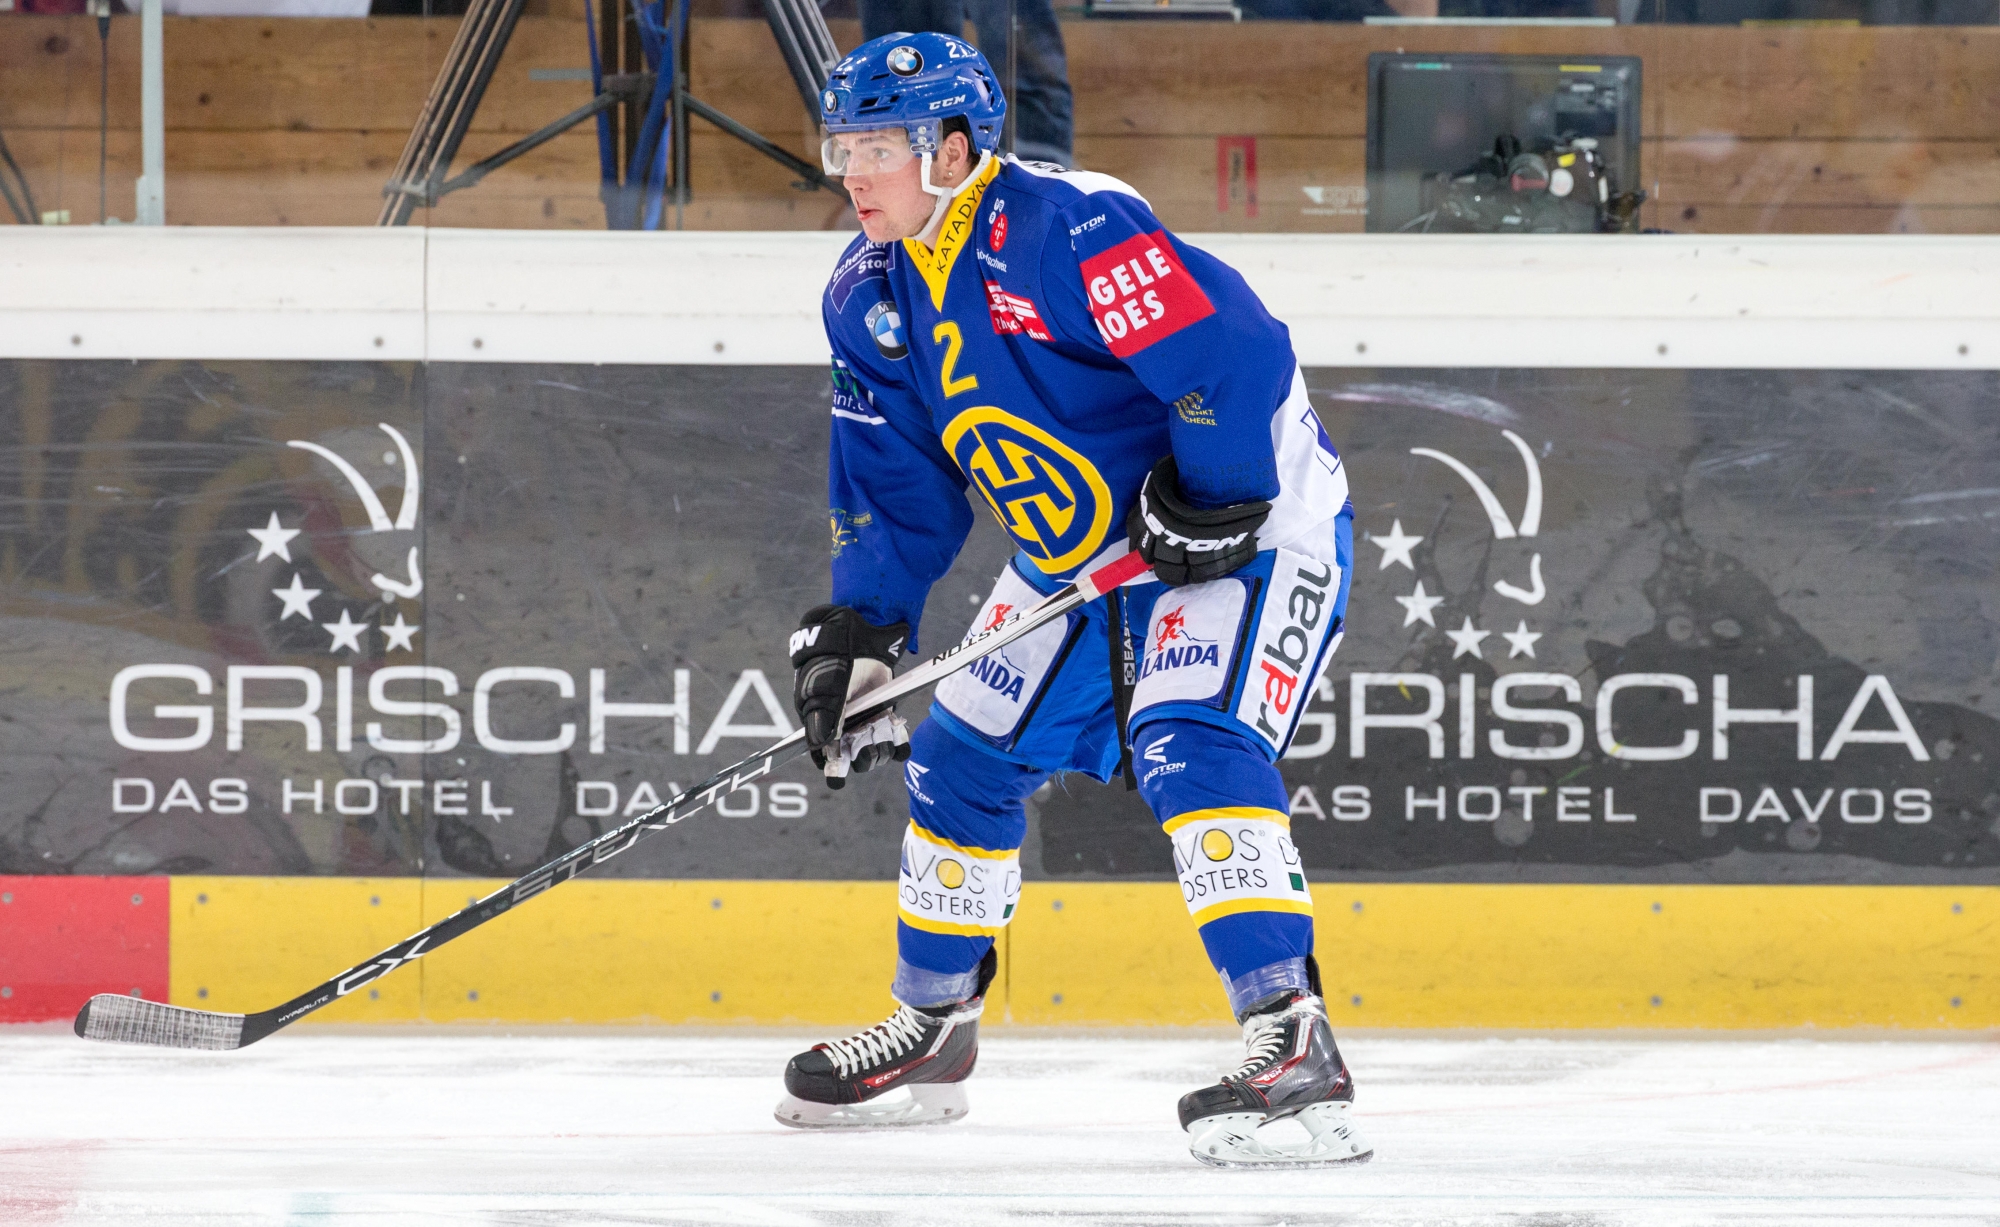 En provenance du HC Davos (9 matches), Jens Nater a principalement évolué avec Thurgovie en LNB ces deux dernières saisons. 